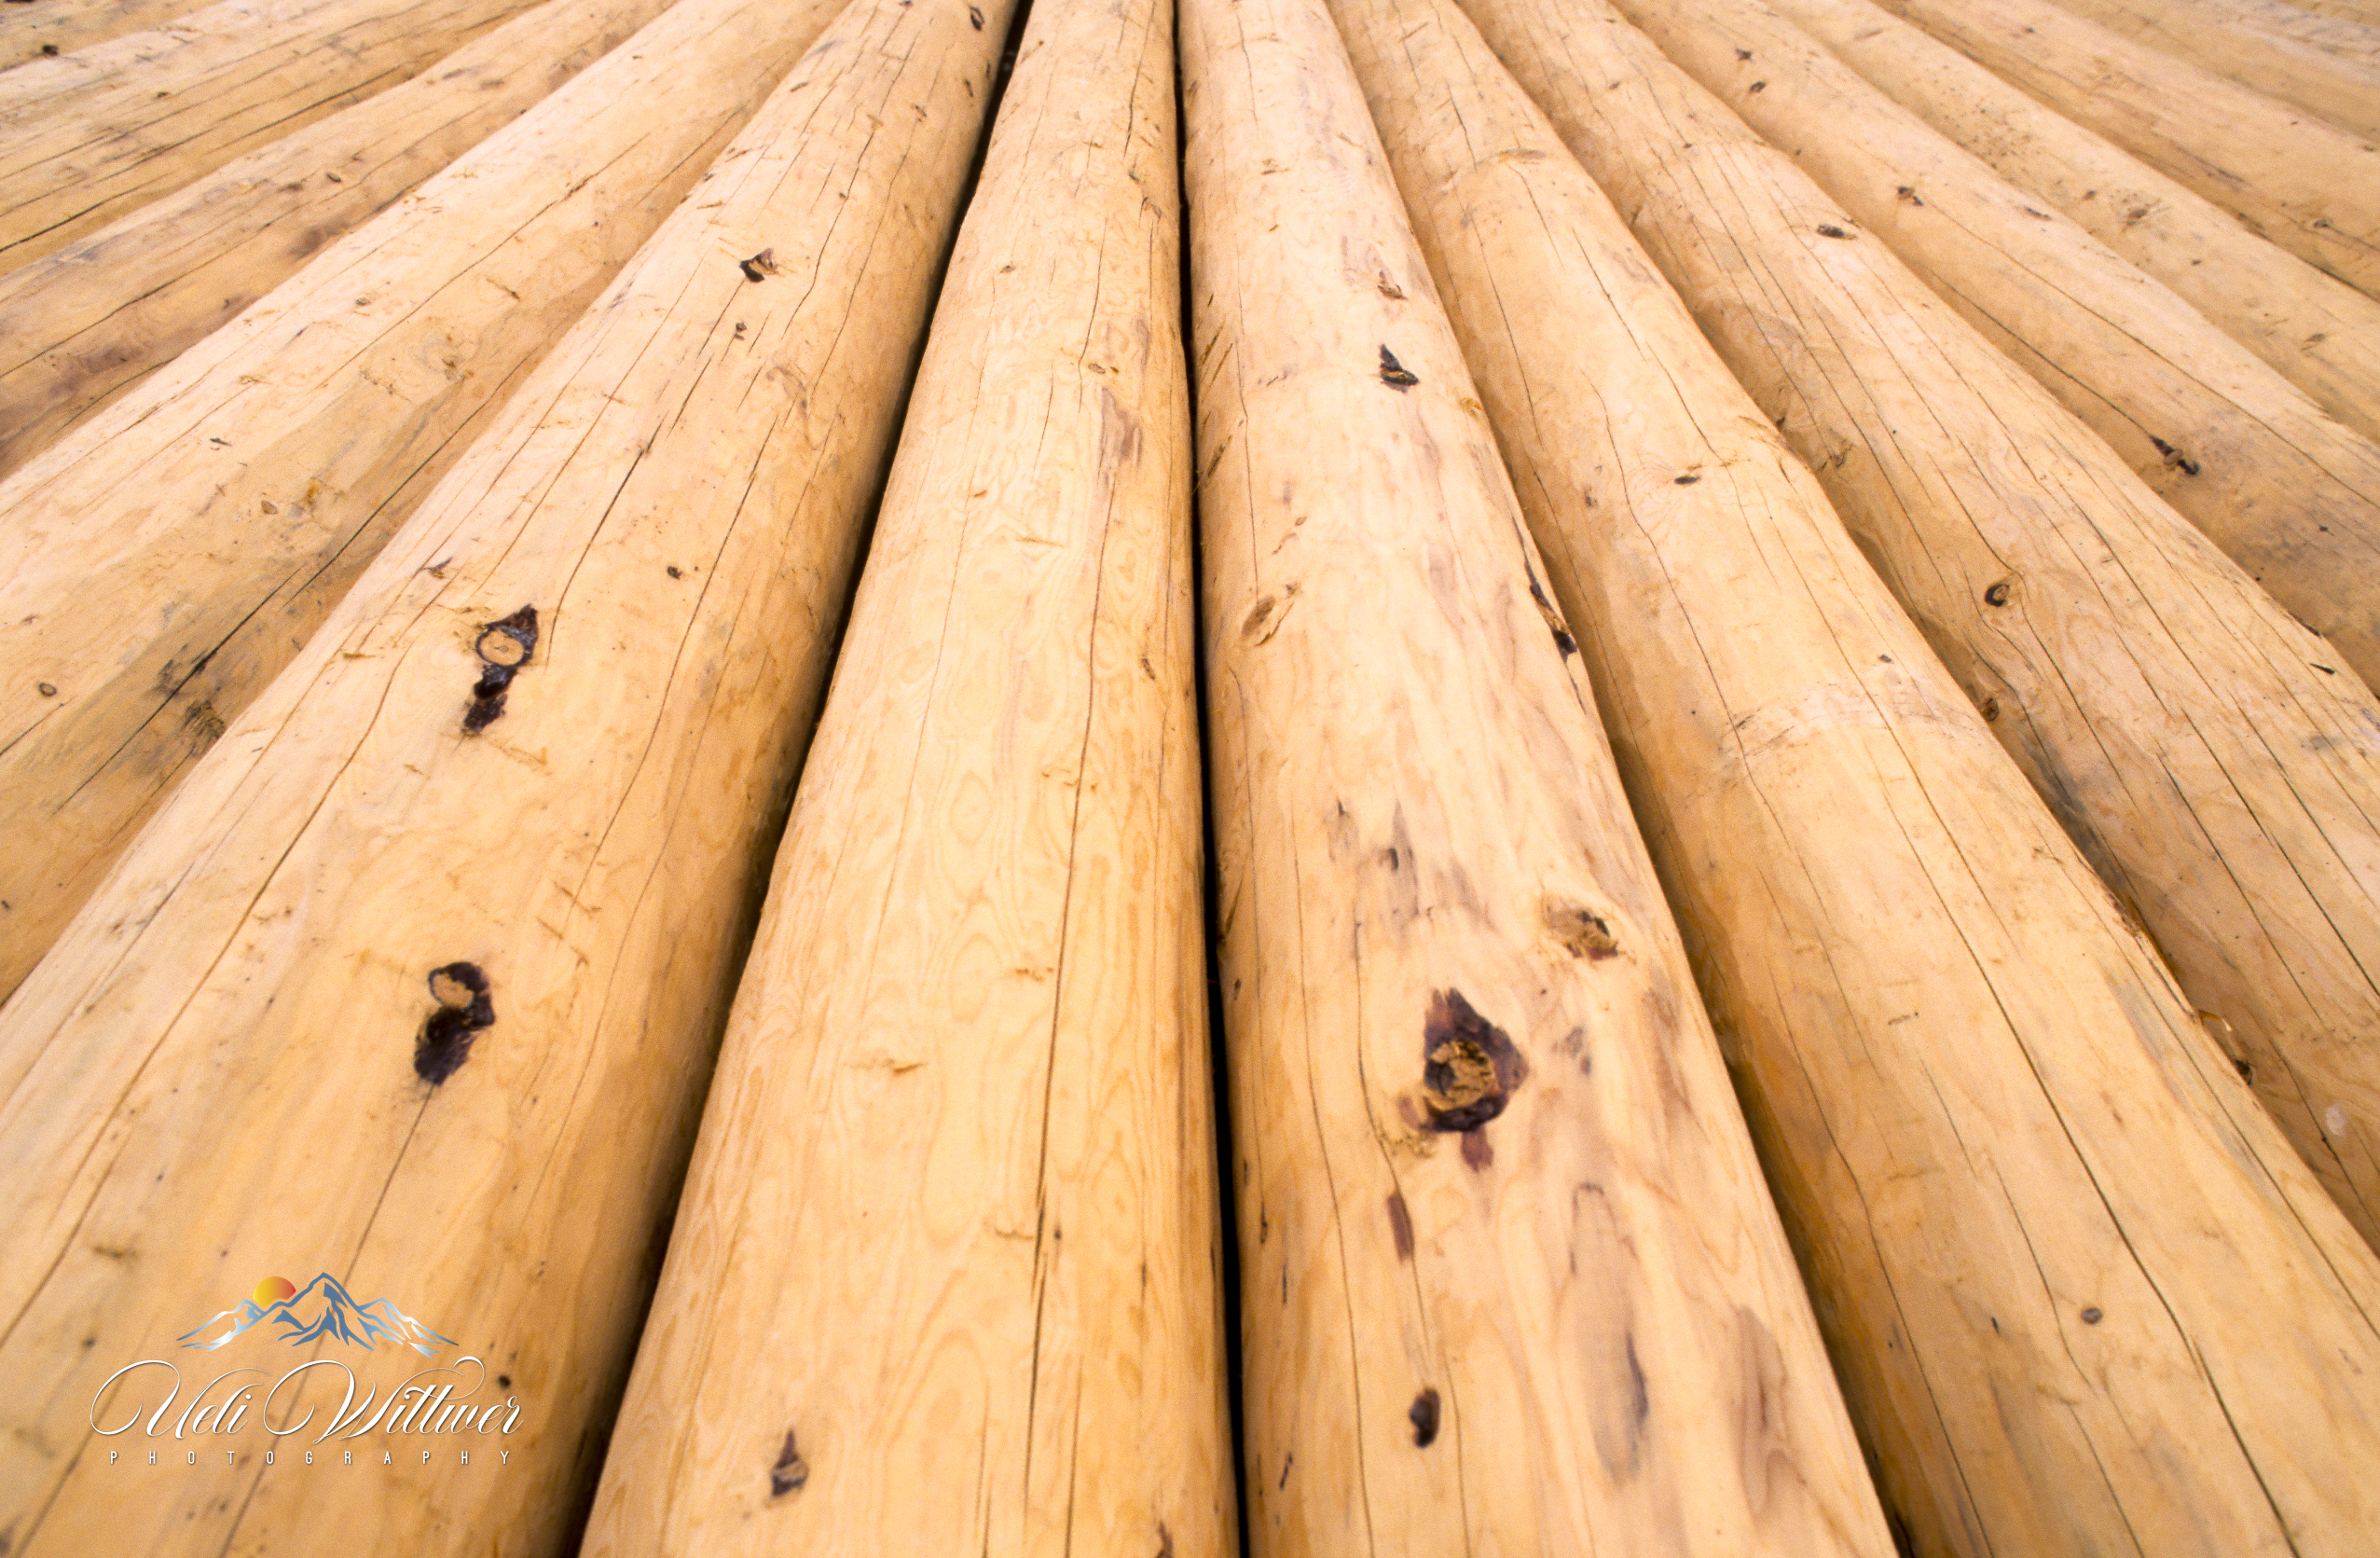 Auswahl der Holzstämme ist entscheidend für die Qualität des Blockhauses. Es werden in der Regel Rundhölzer aus Nadelholz verwendet